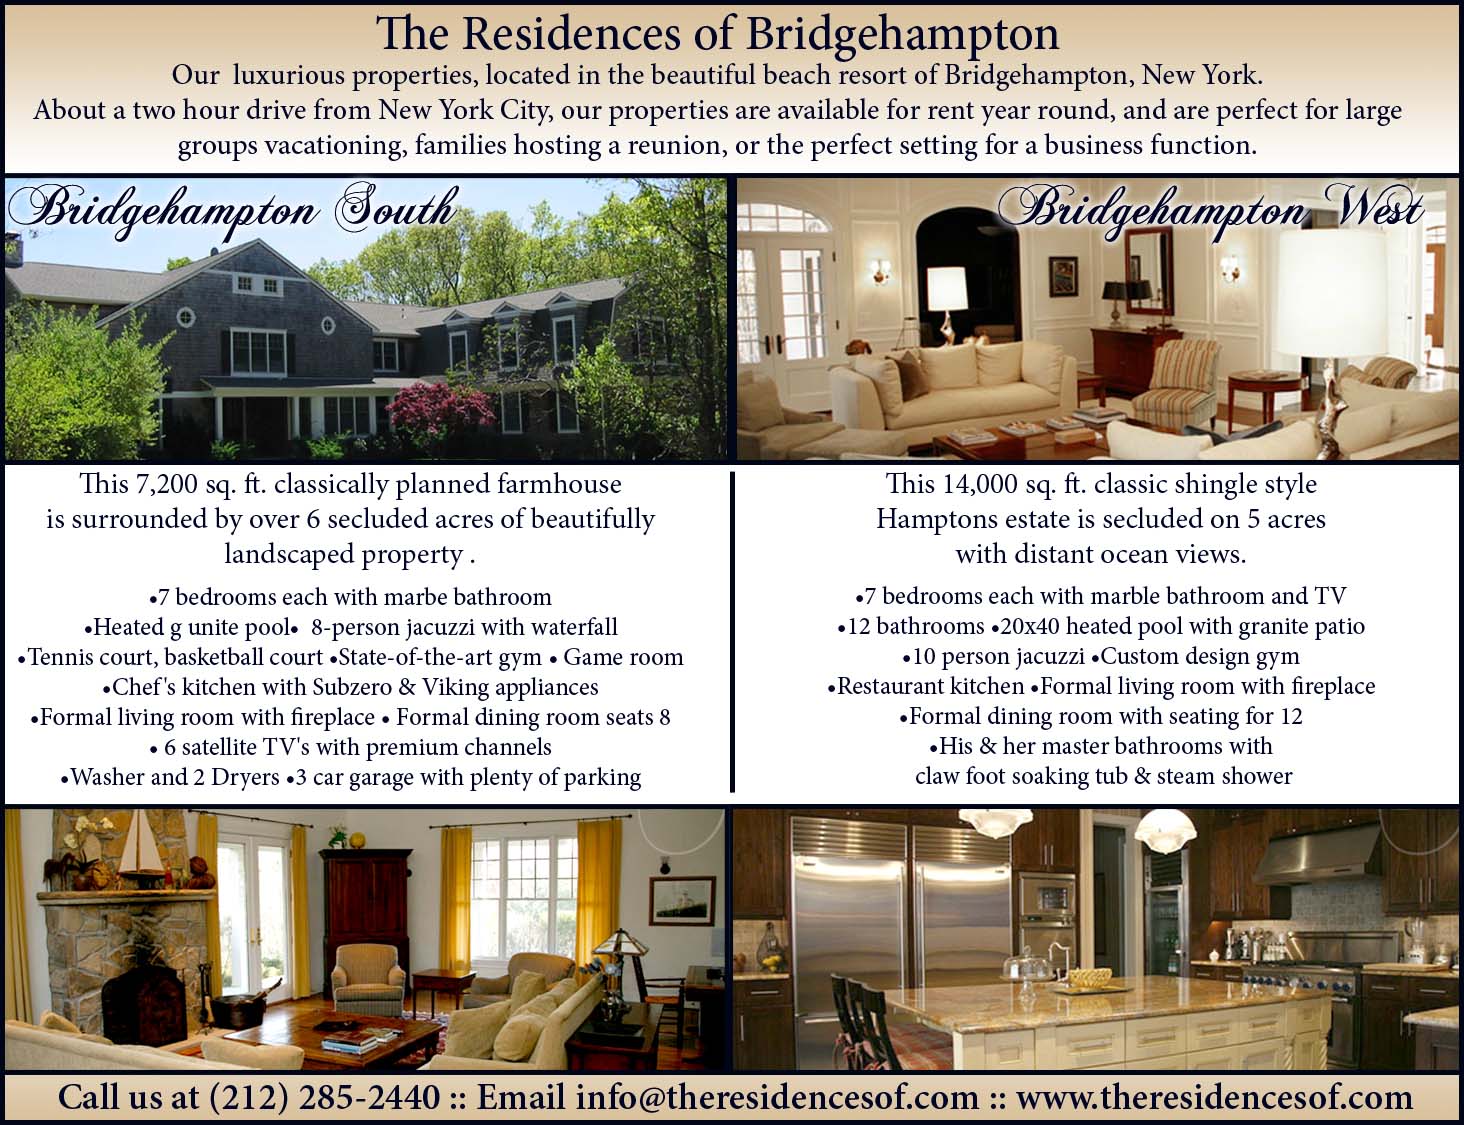 Residences of Bridgehampton